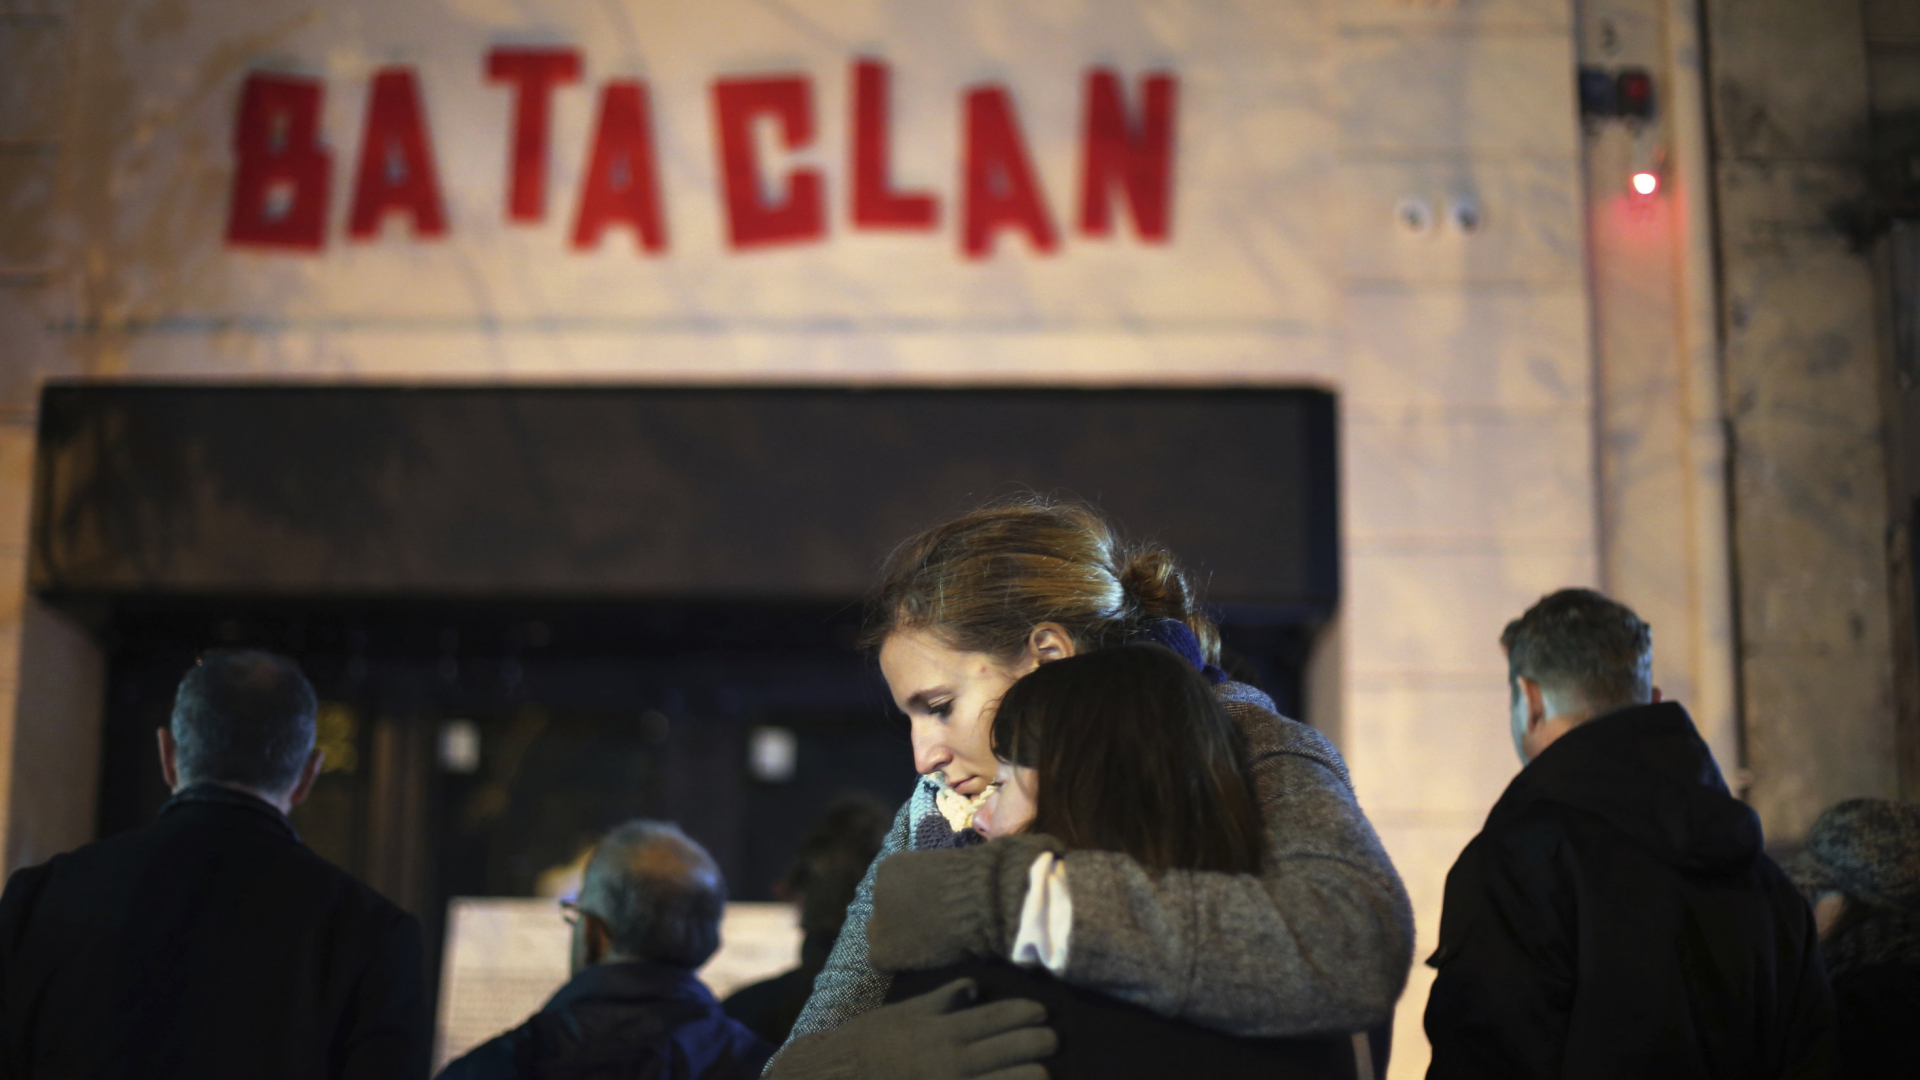 Vor dem Pariser Musikklung Bataclan umarmen sich am 13.11.2015 nach dem Terroranschlag zwei Frauen